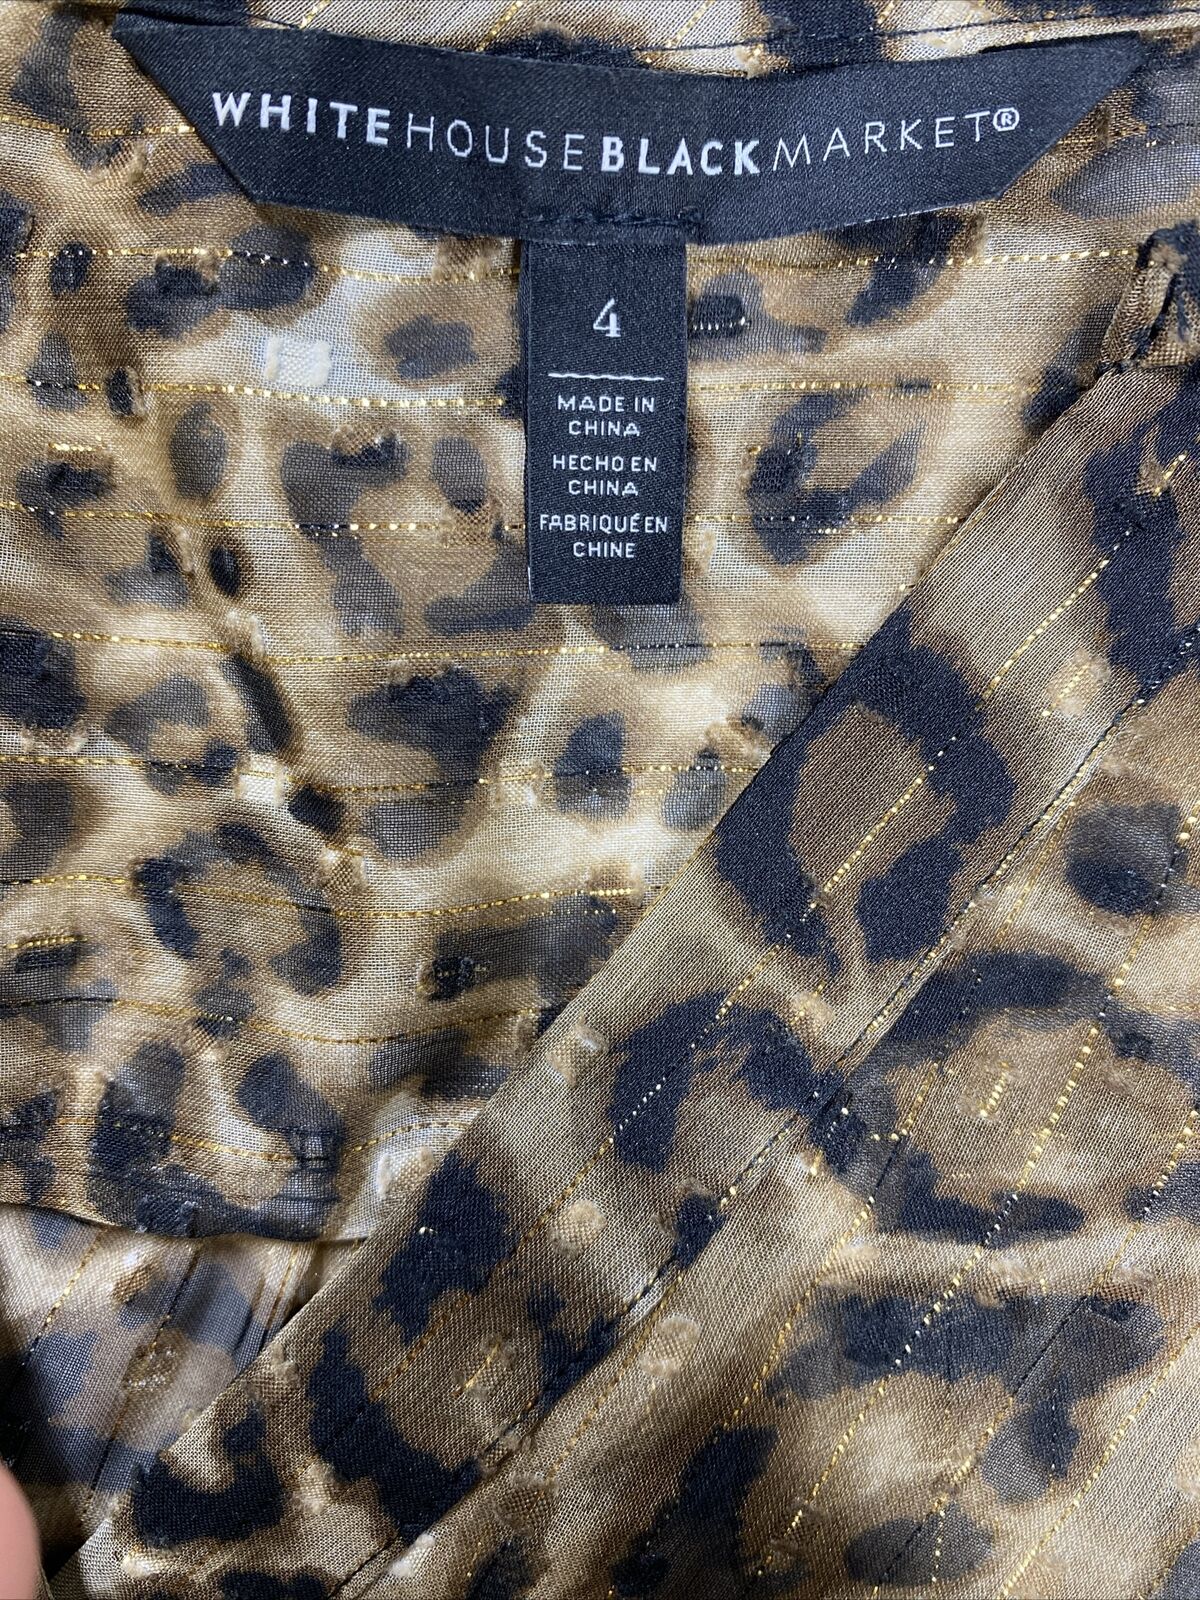 White House Black Market Women's Brown Leopard Print Blouson Dress - 4